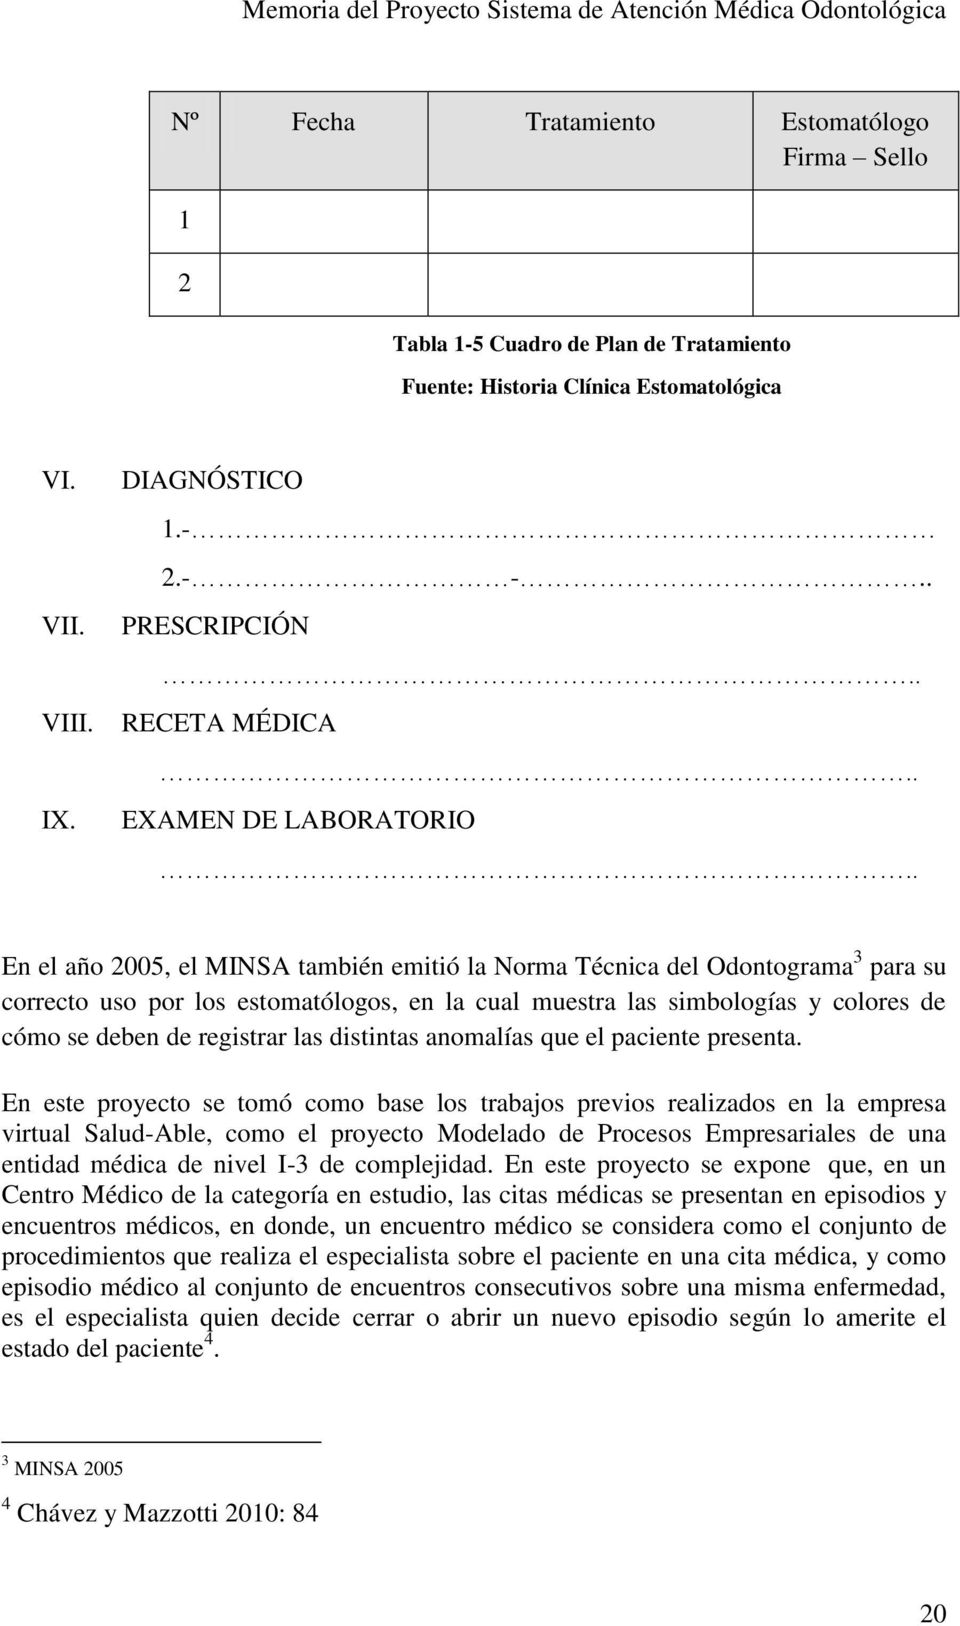 . En el año 2005, el MINSA también emitió la Norma Técnica del Odontograma 3 para su correcto uso por los estomatólogos, en la cual muestra las simbologías y colores de cómo se deben de registrar las